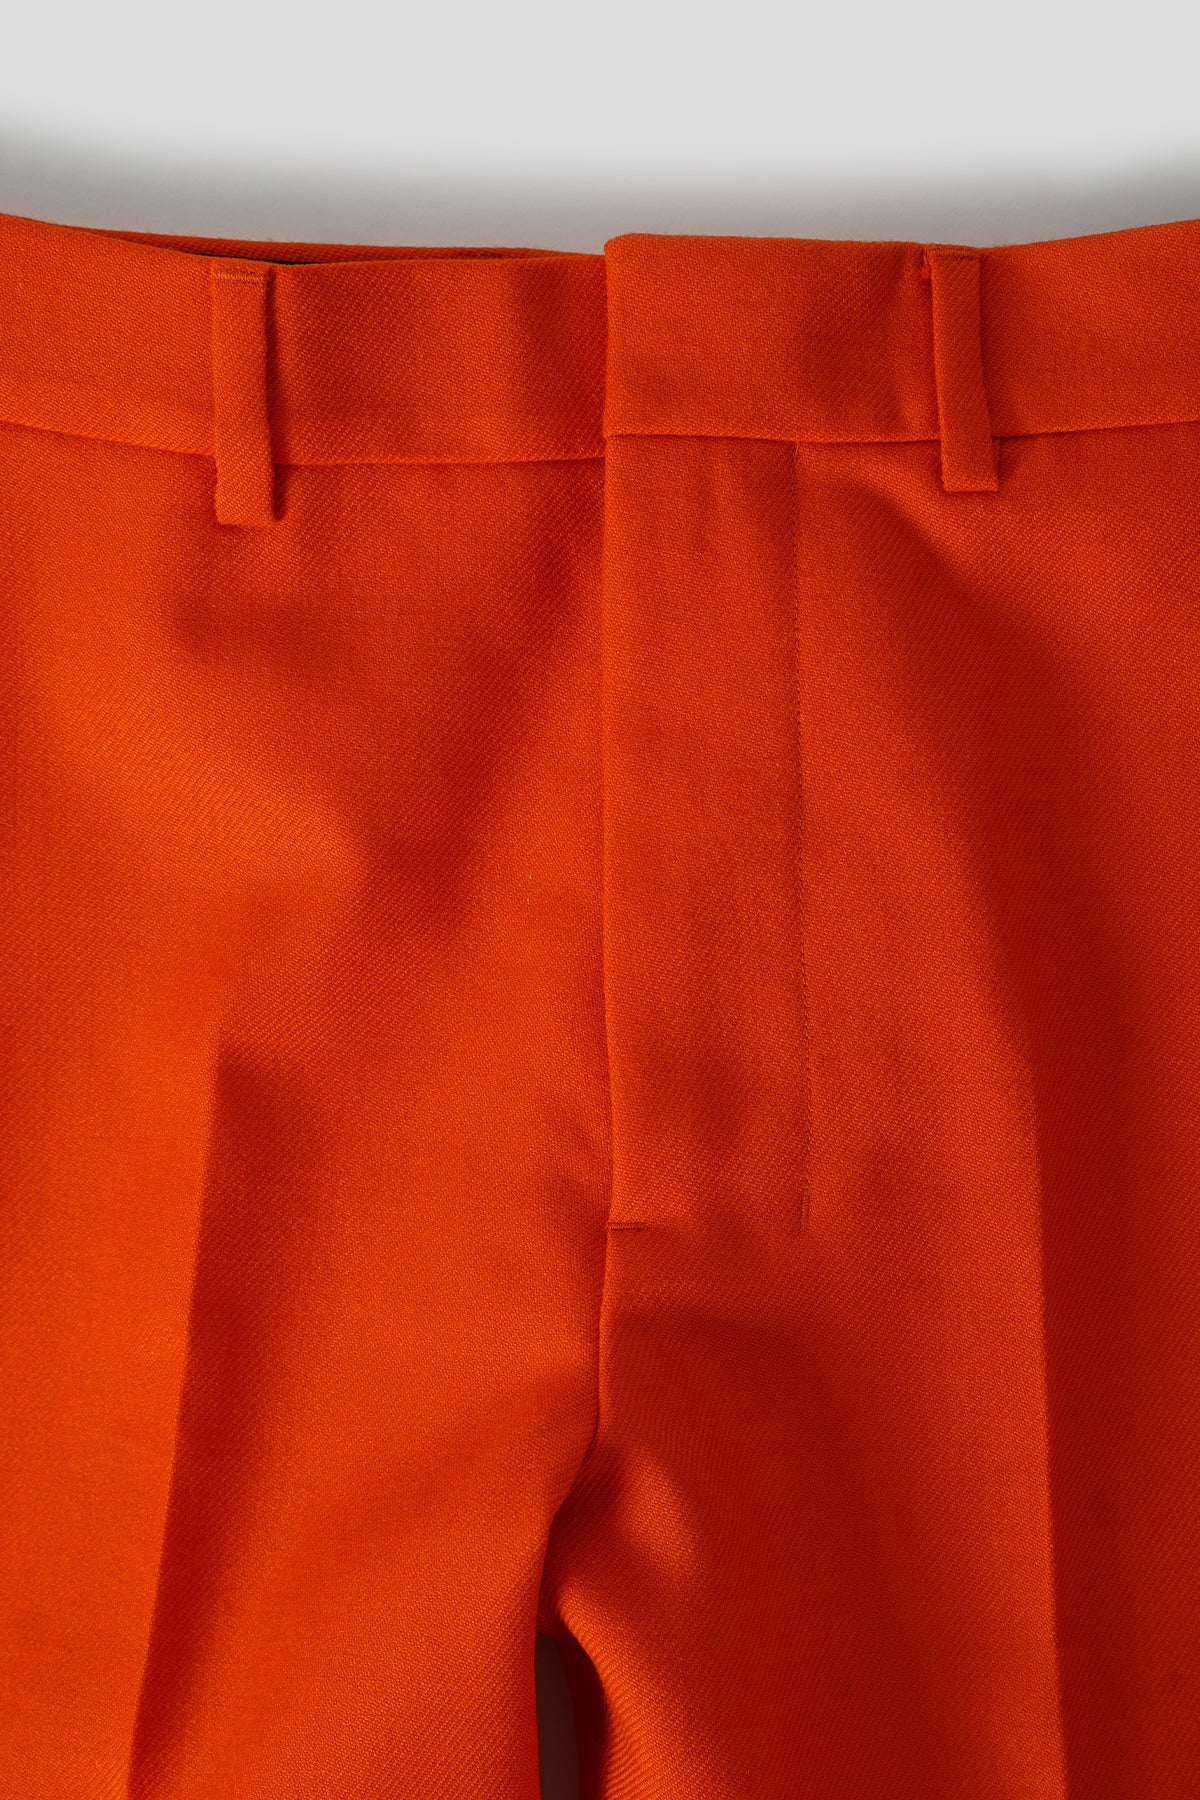 AMI Alexandre Mattiussi: Orange Cigarette Trousers